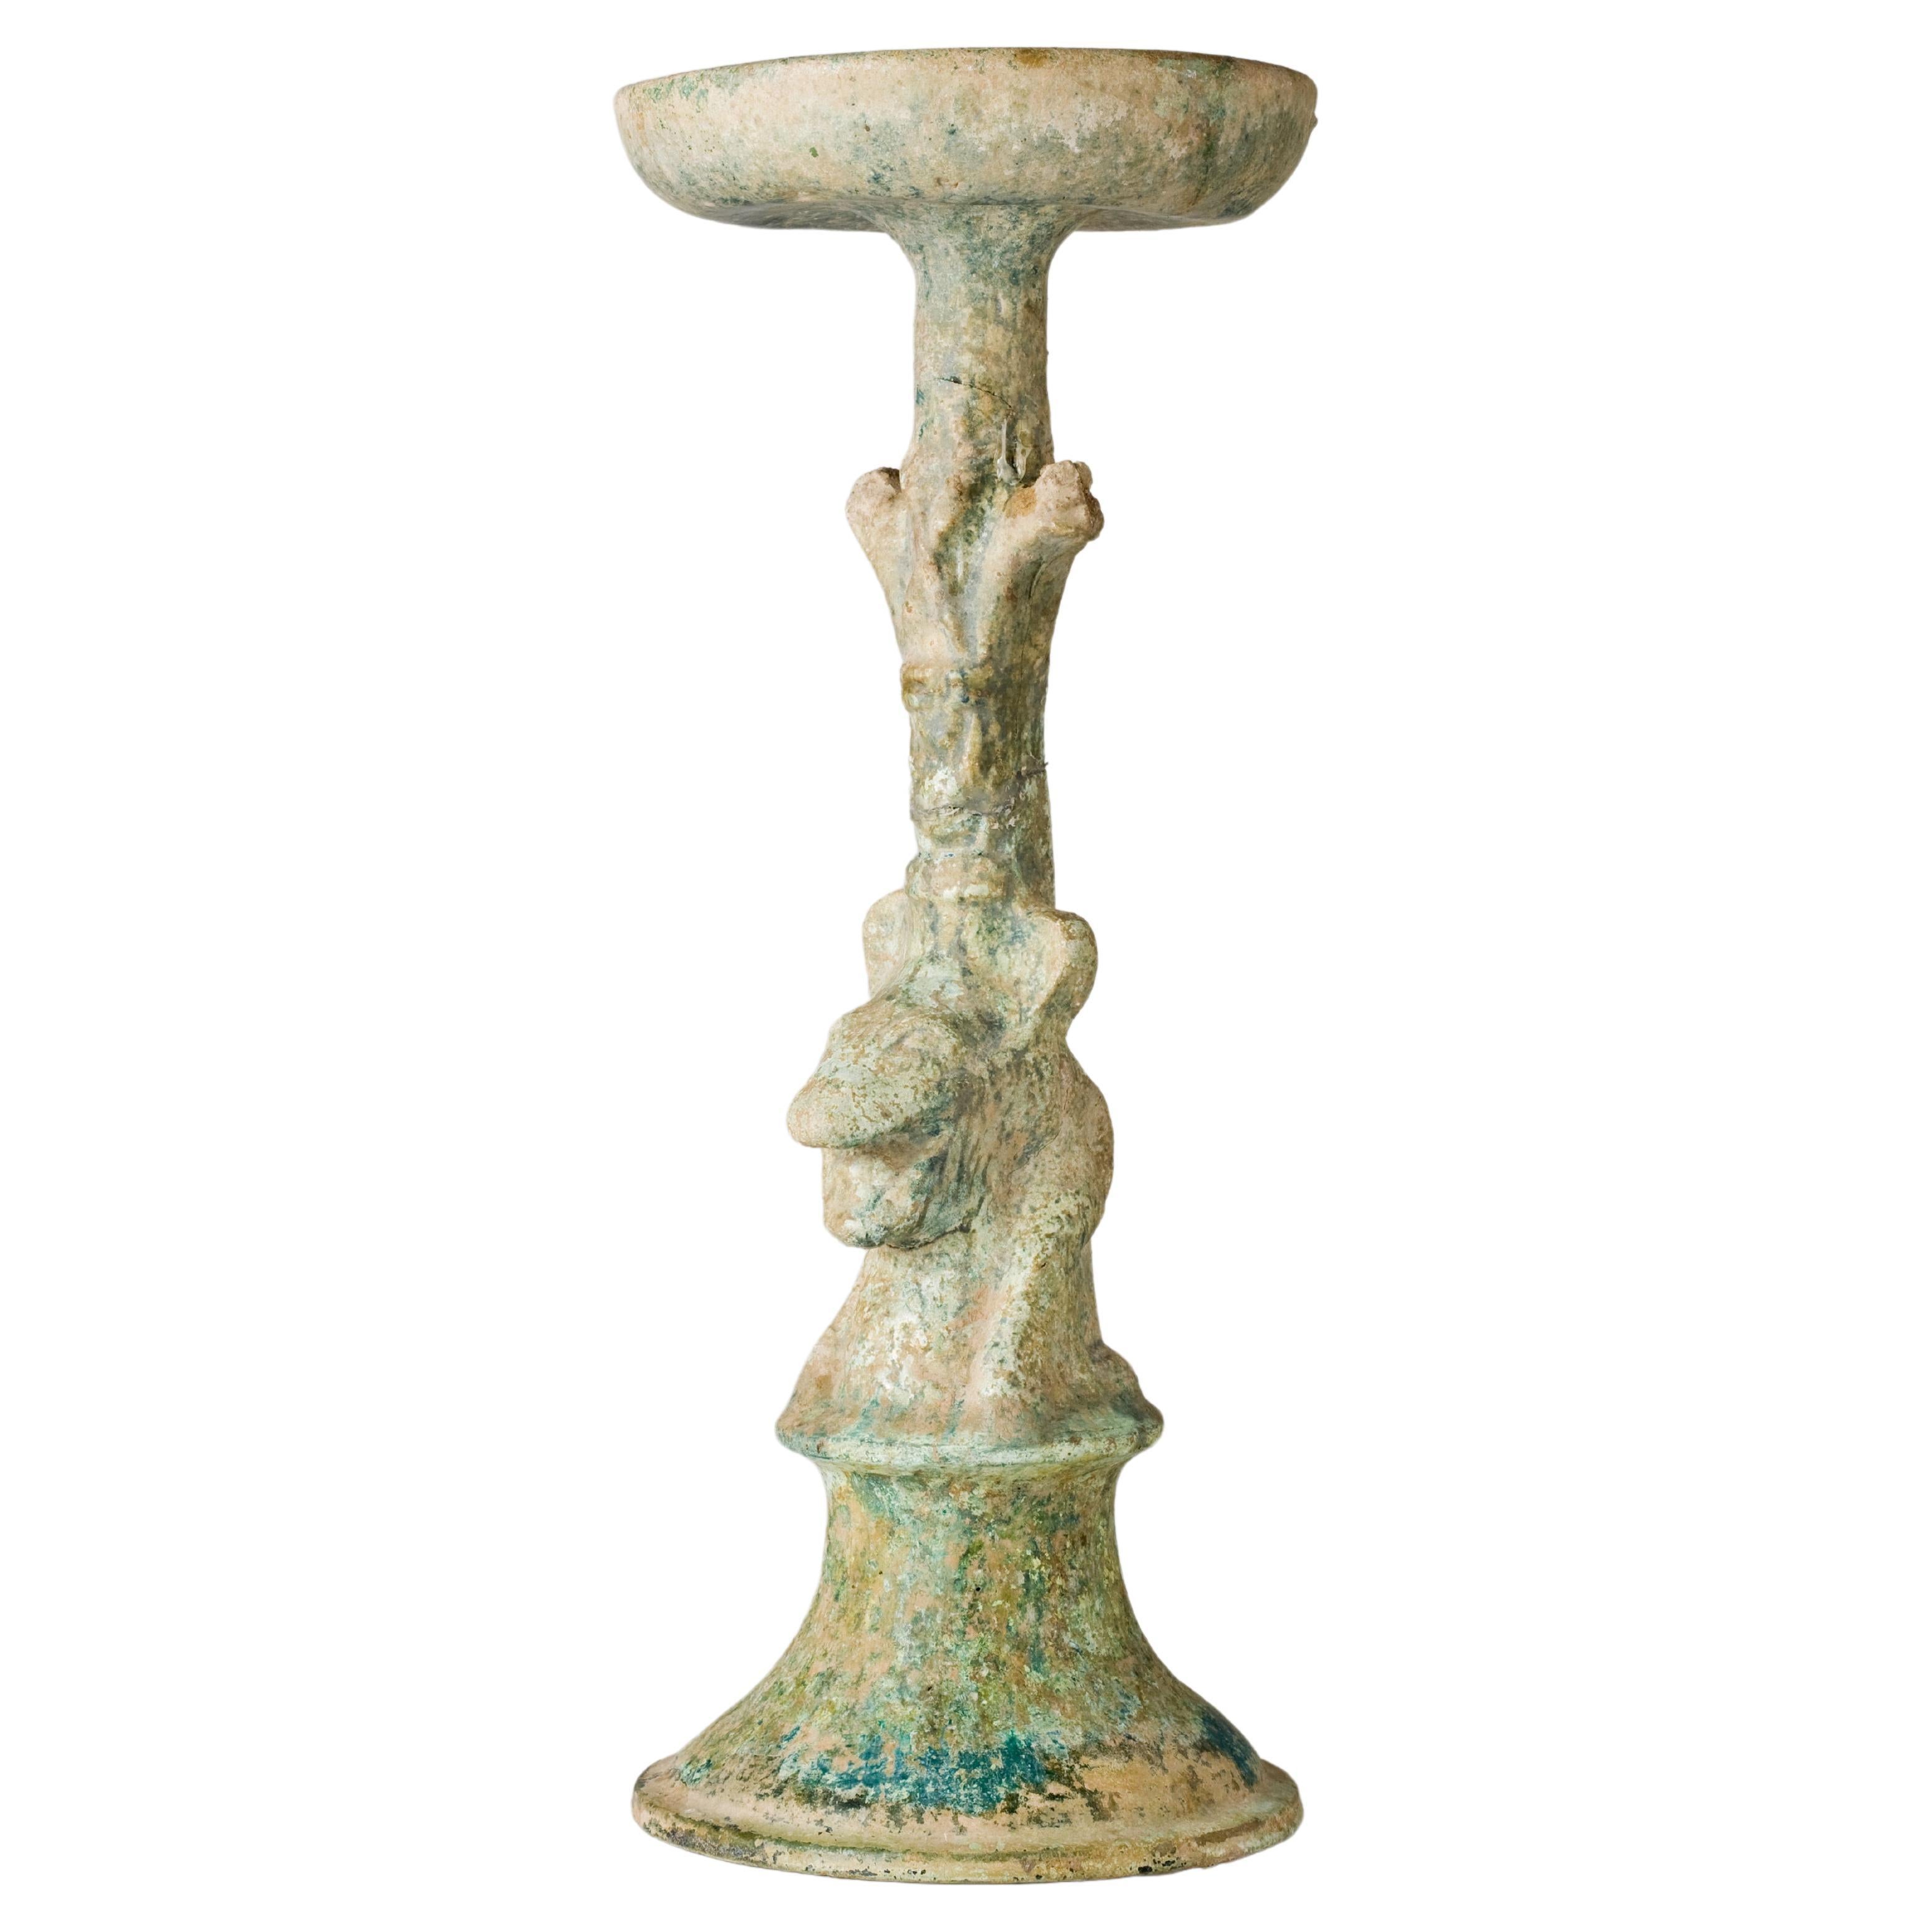 Lampenständer aus grün glasierter Keramik, Han Dynasty(206BC-220AD)